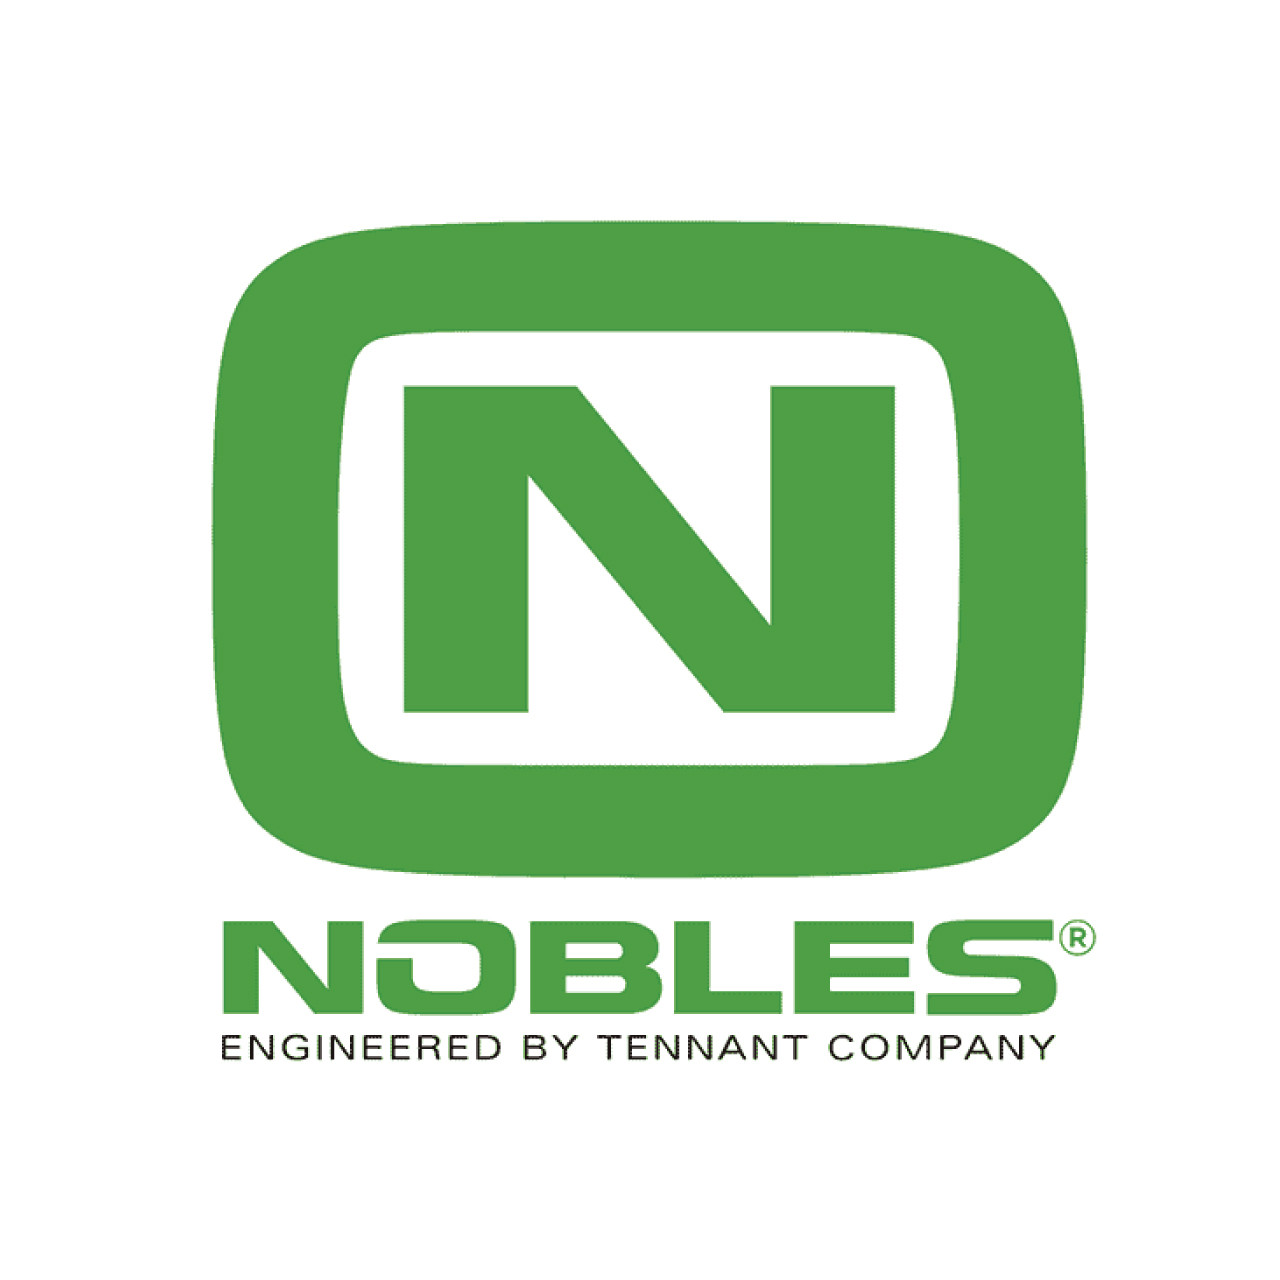 Nobles 328453 CS, INSTR, DEBRIS DEFLECTOR, FR [6100] pic